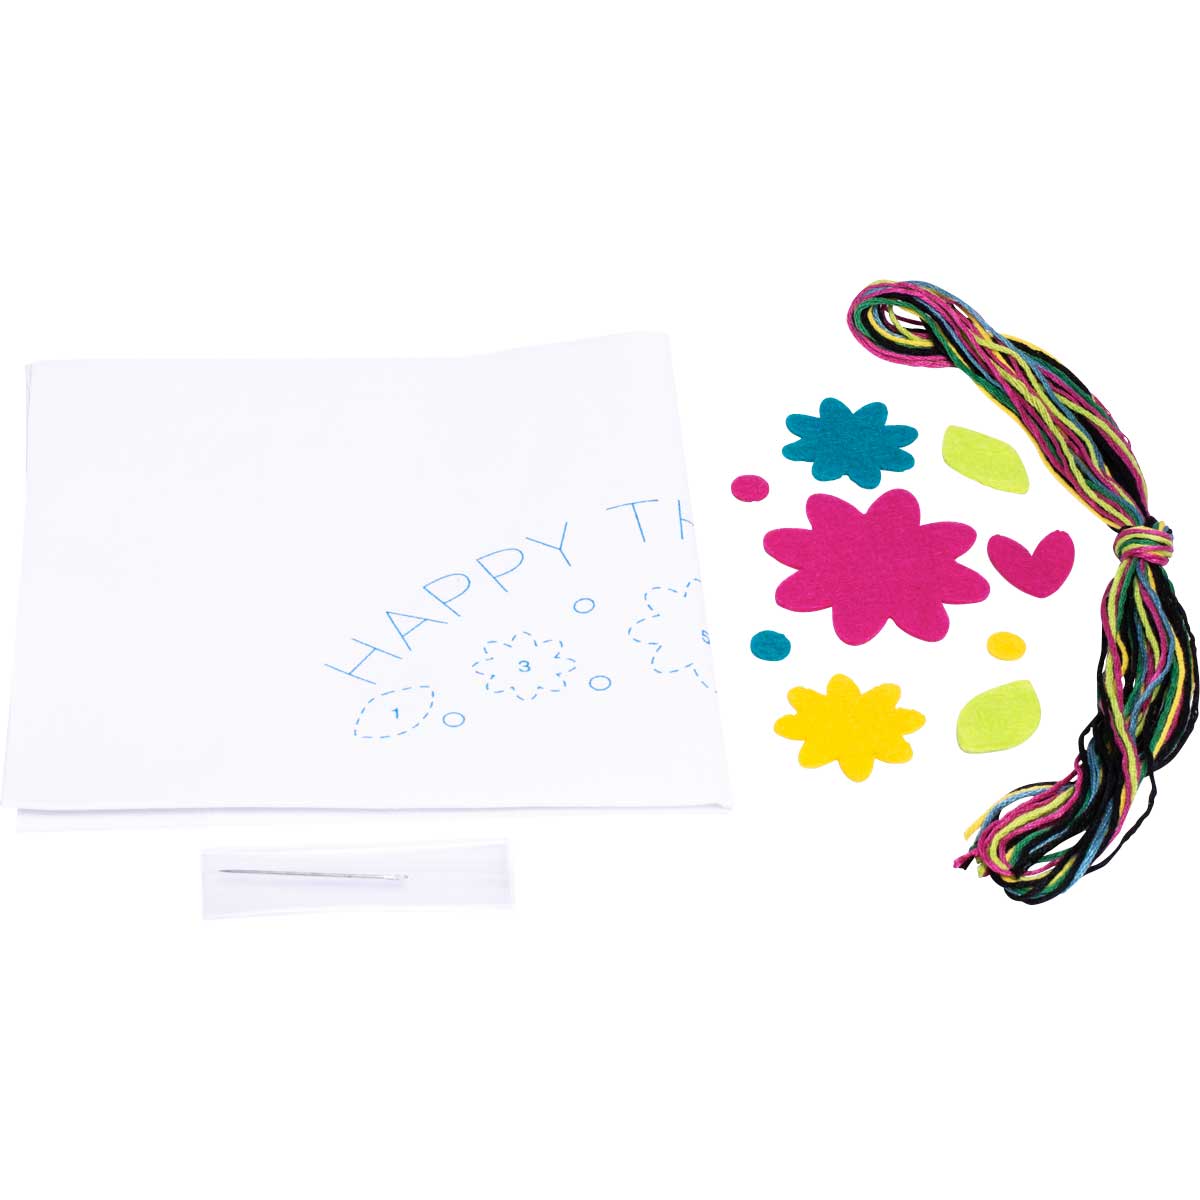 Bucilla ® My 1st Stitch™ - Stamped Cross Stitch Kits - Happy Thoughts - 47818E